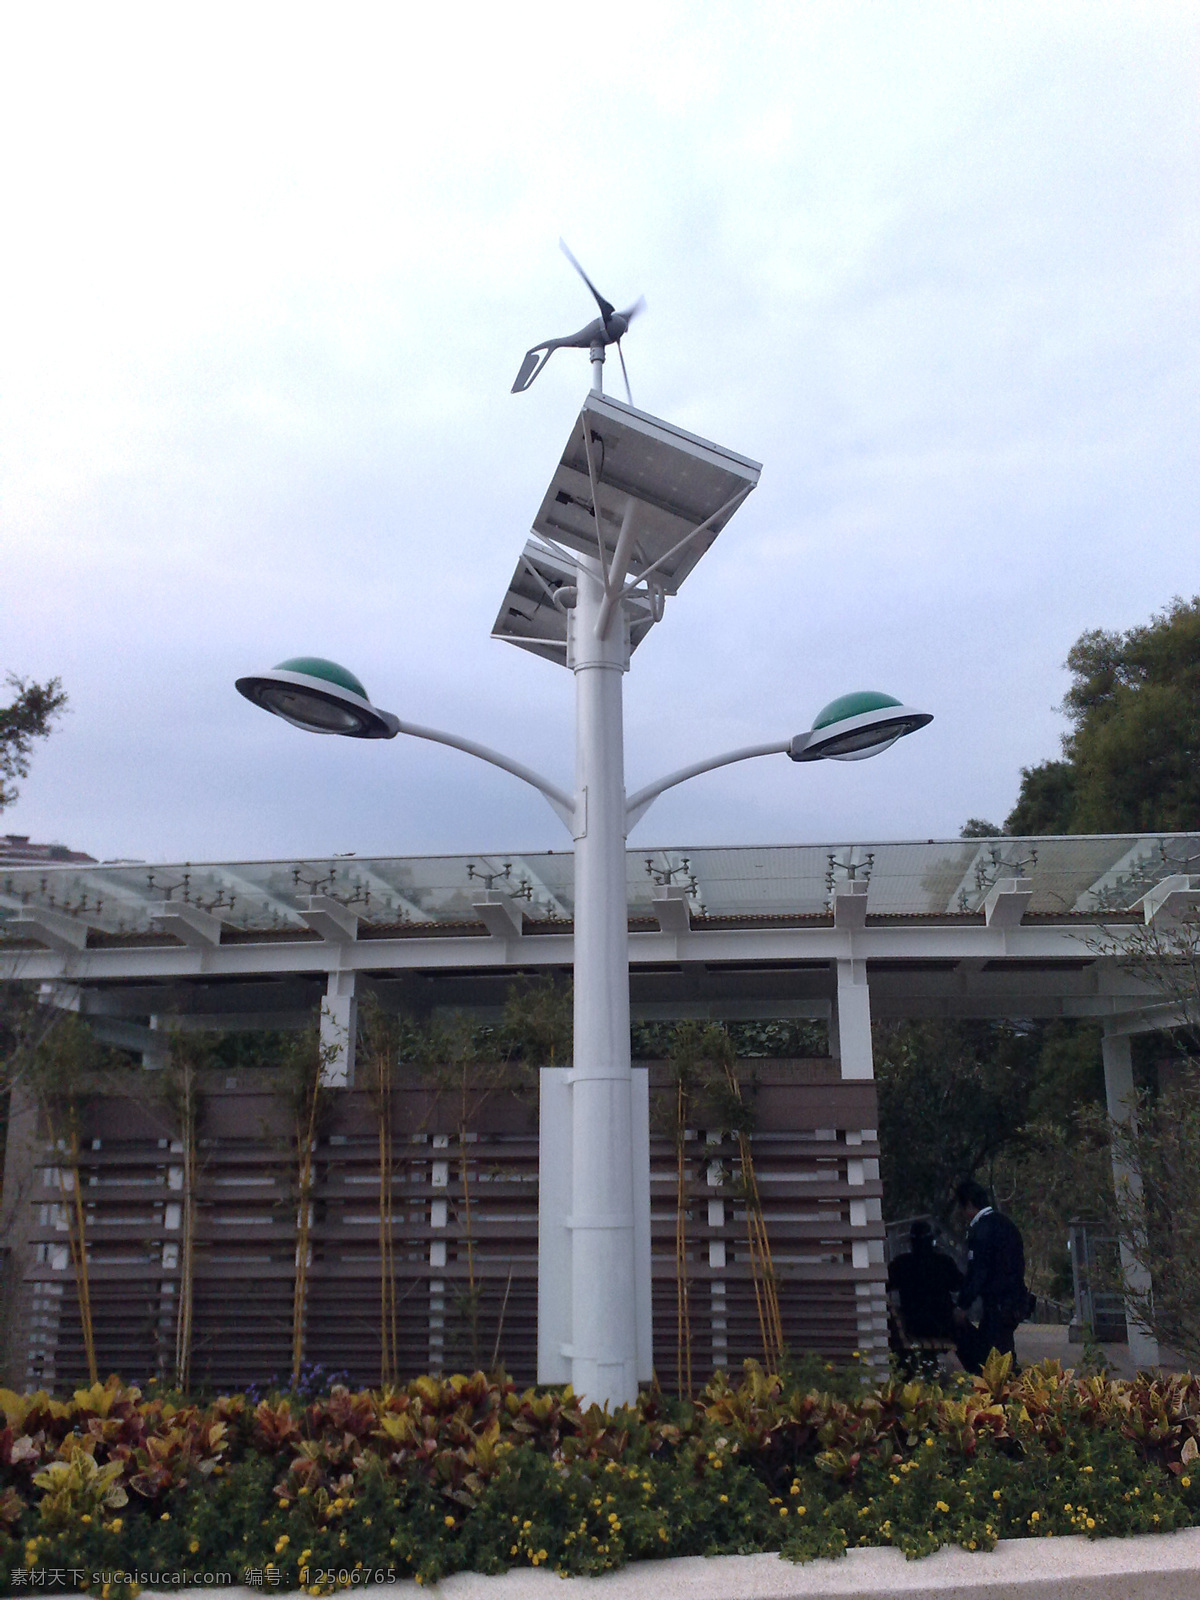 太 陽 風 車 電 燈 电灯 公园 太阳能 现代科技 风速仪 风向仪 矢量图 日常生活